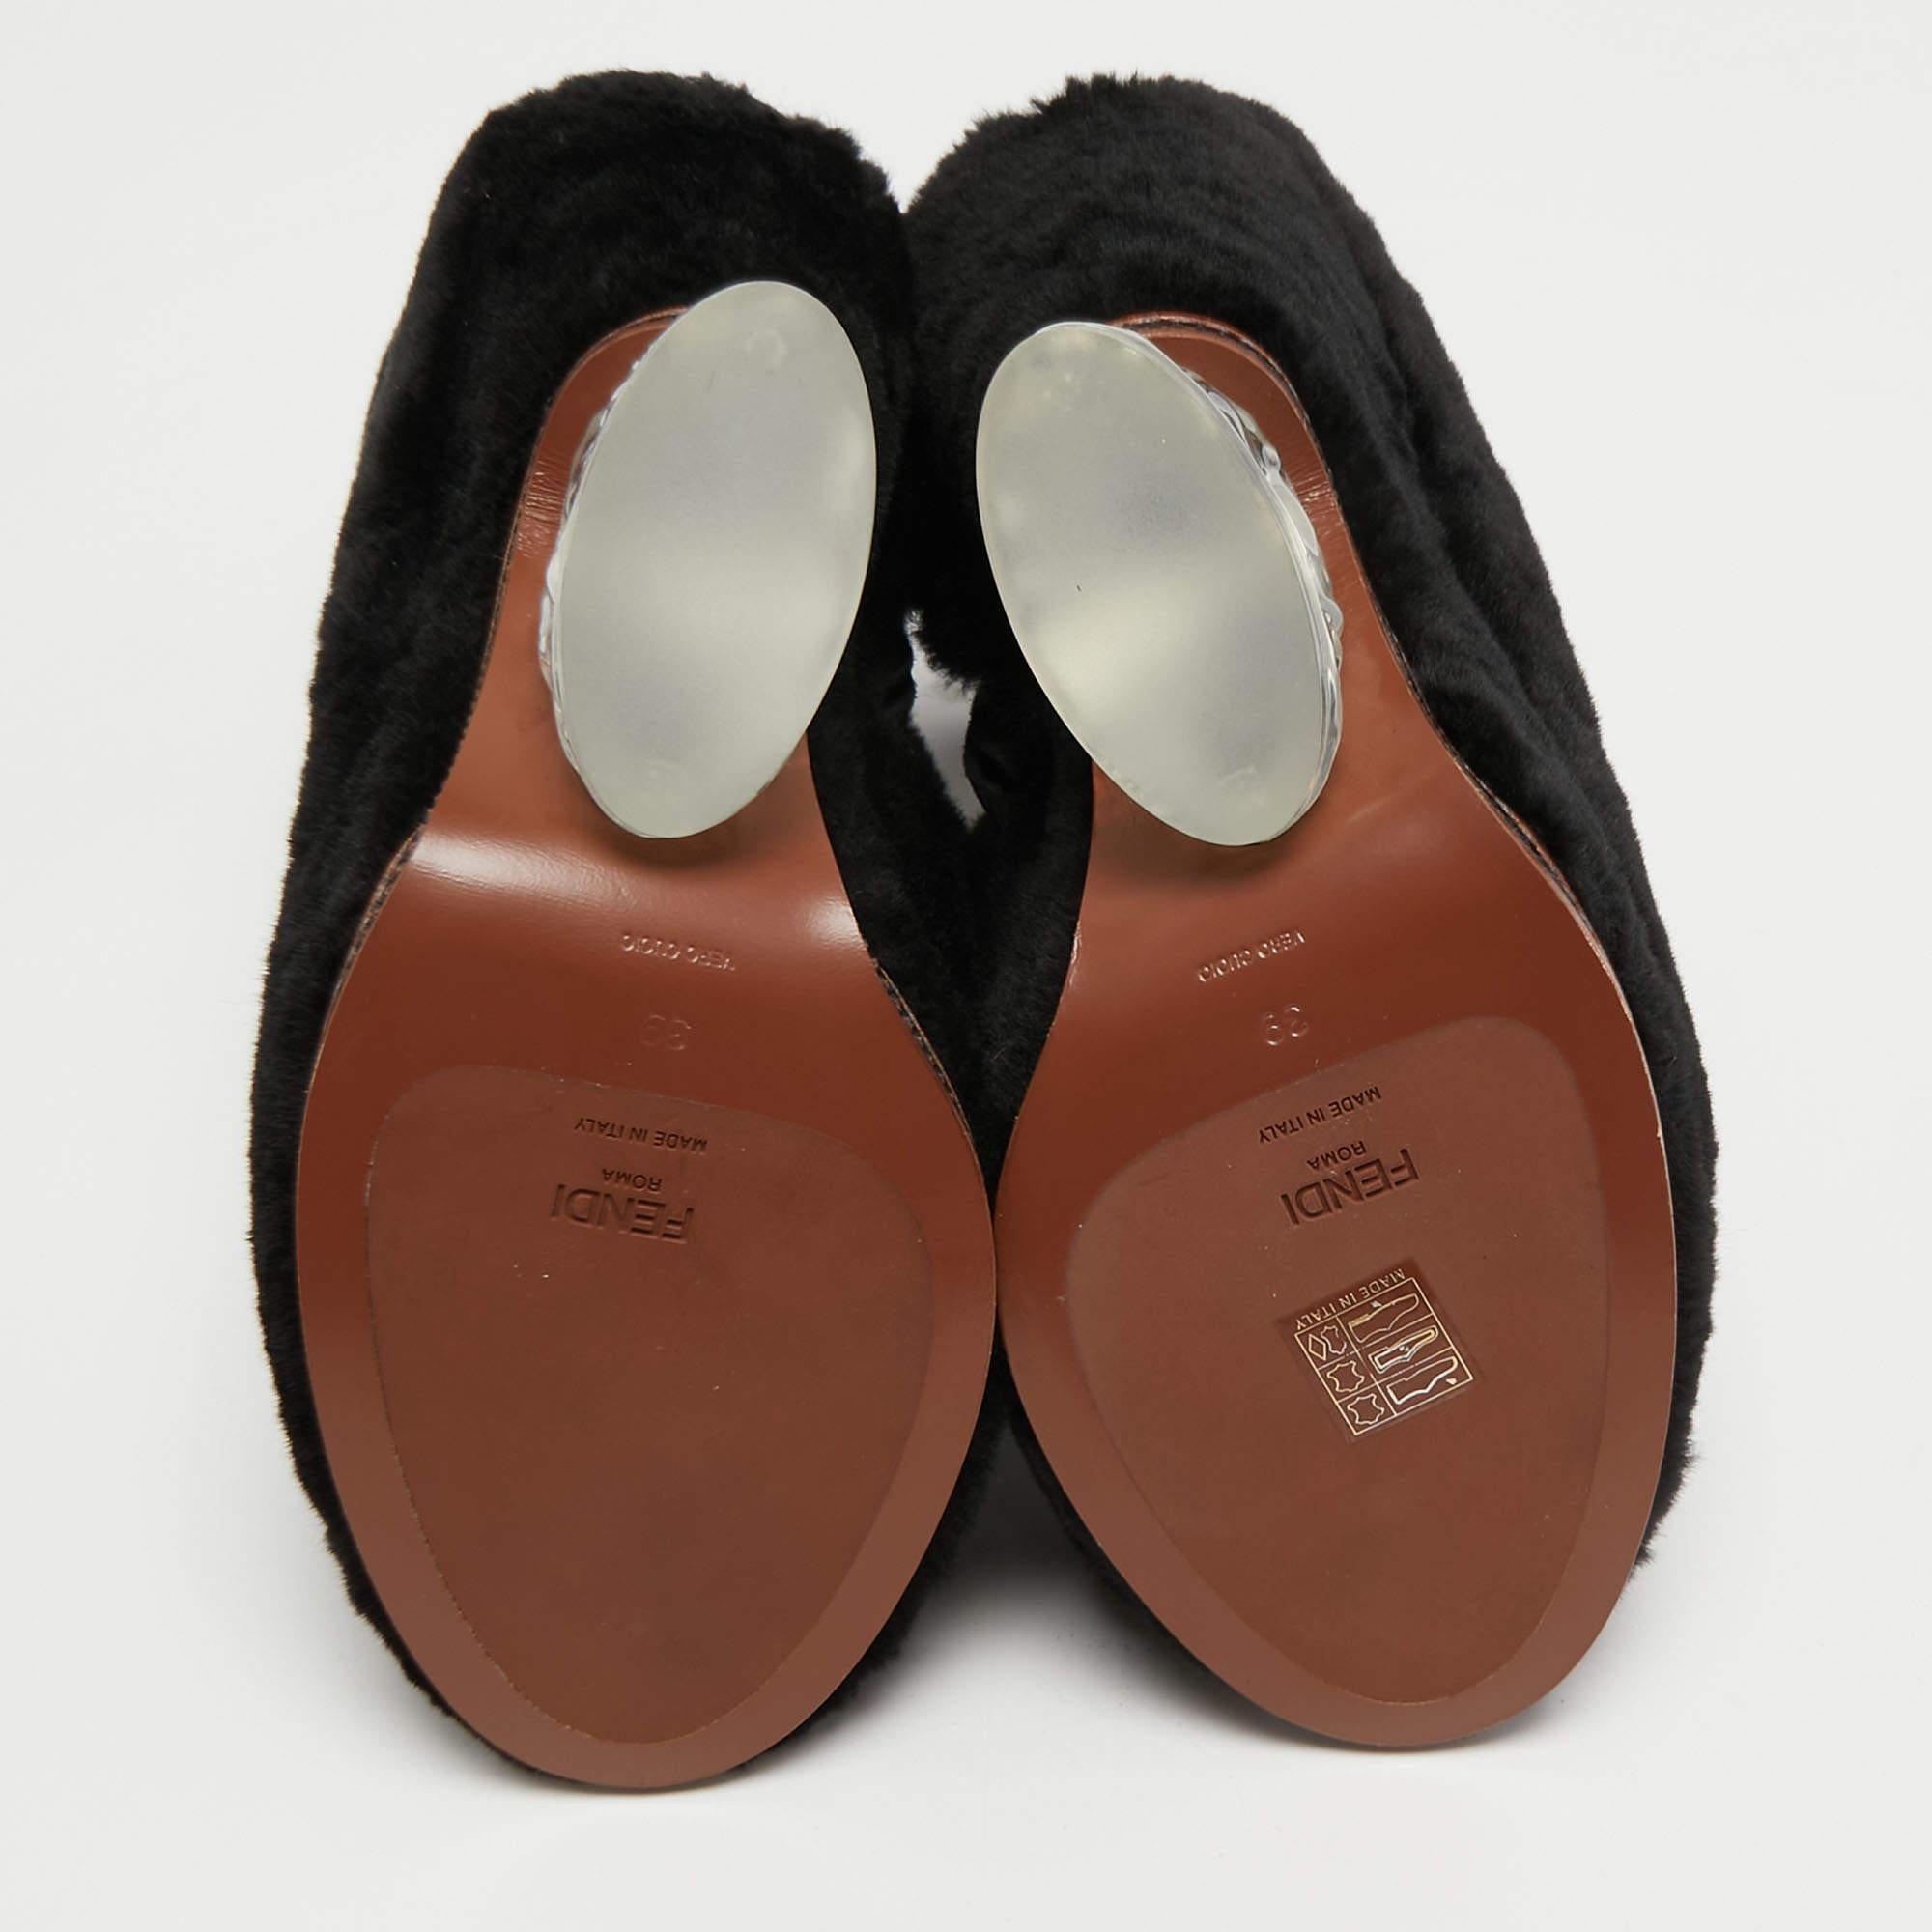 Fendi Black Fur Ankle Boots Size 39 5